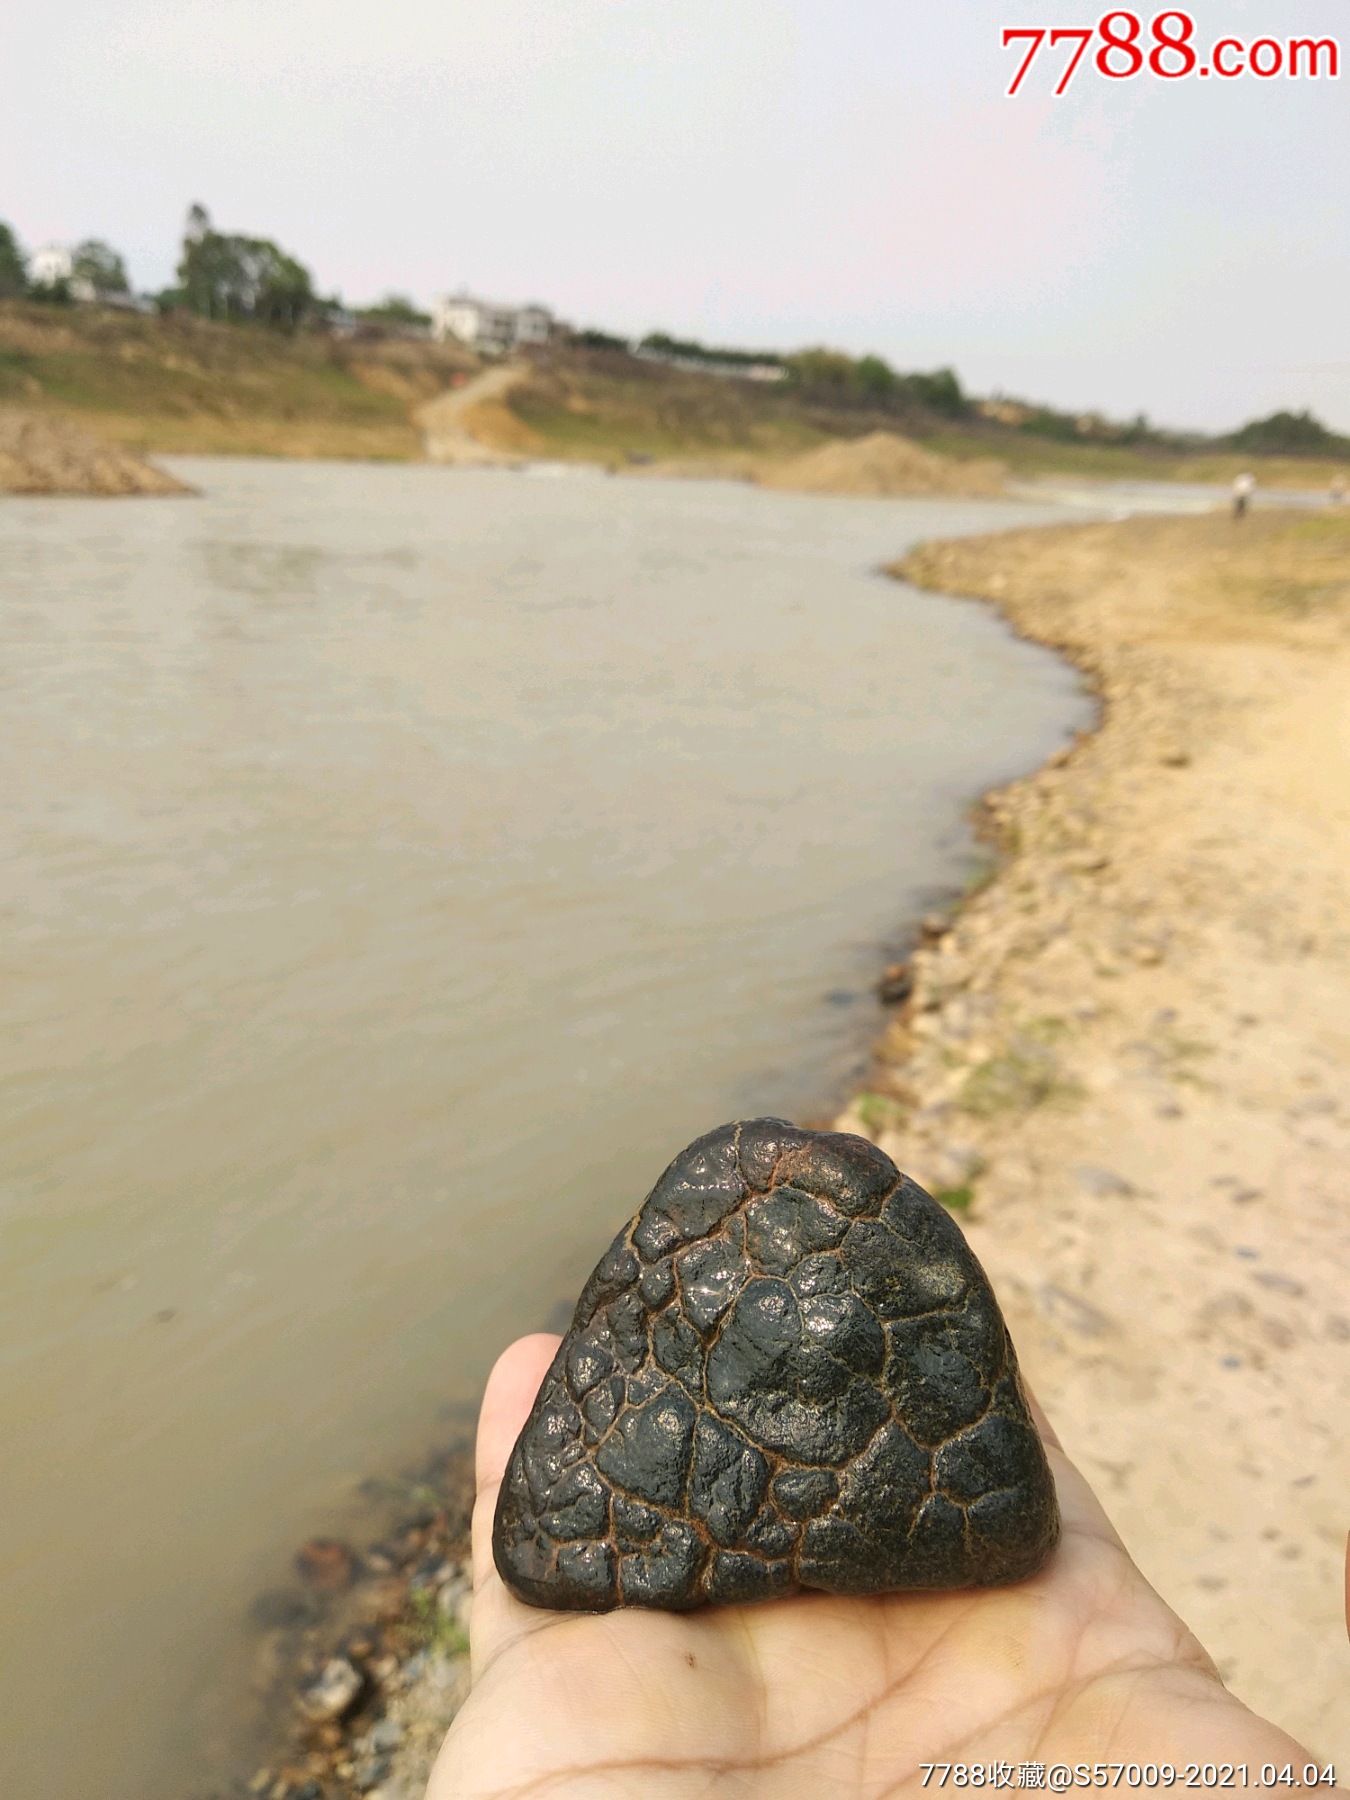 非常罕见的龟纹石头